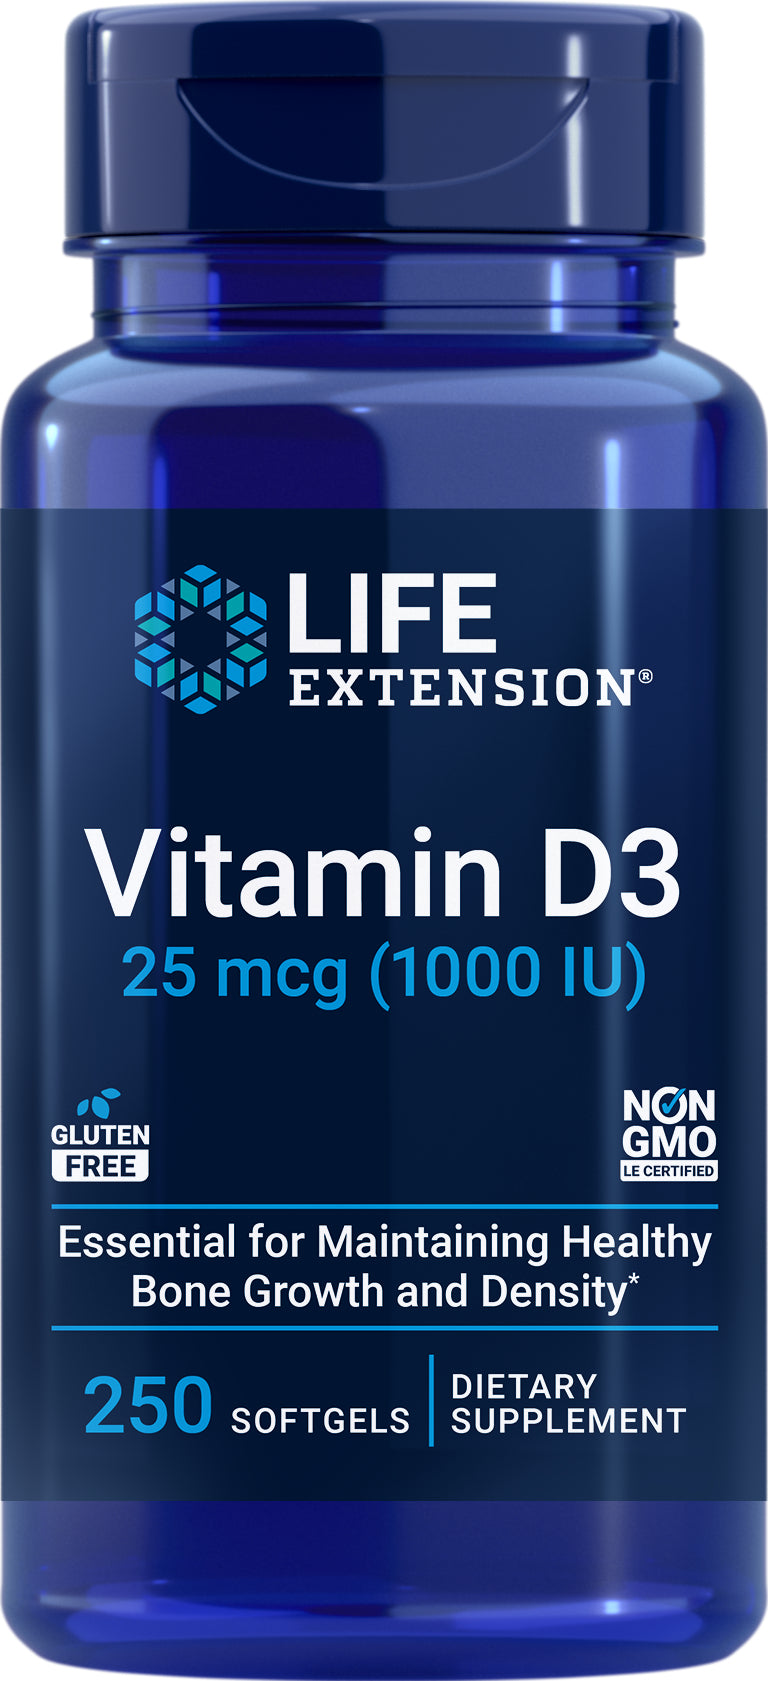 Vitamin D3 25 mcg (1000 IU), 250 softgels by Life Extension